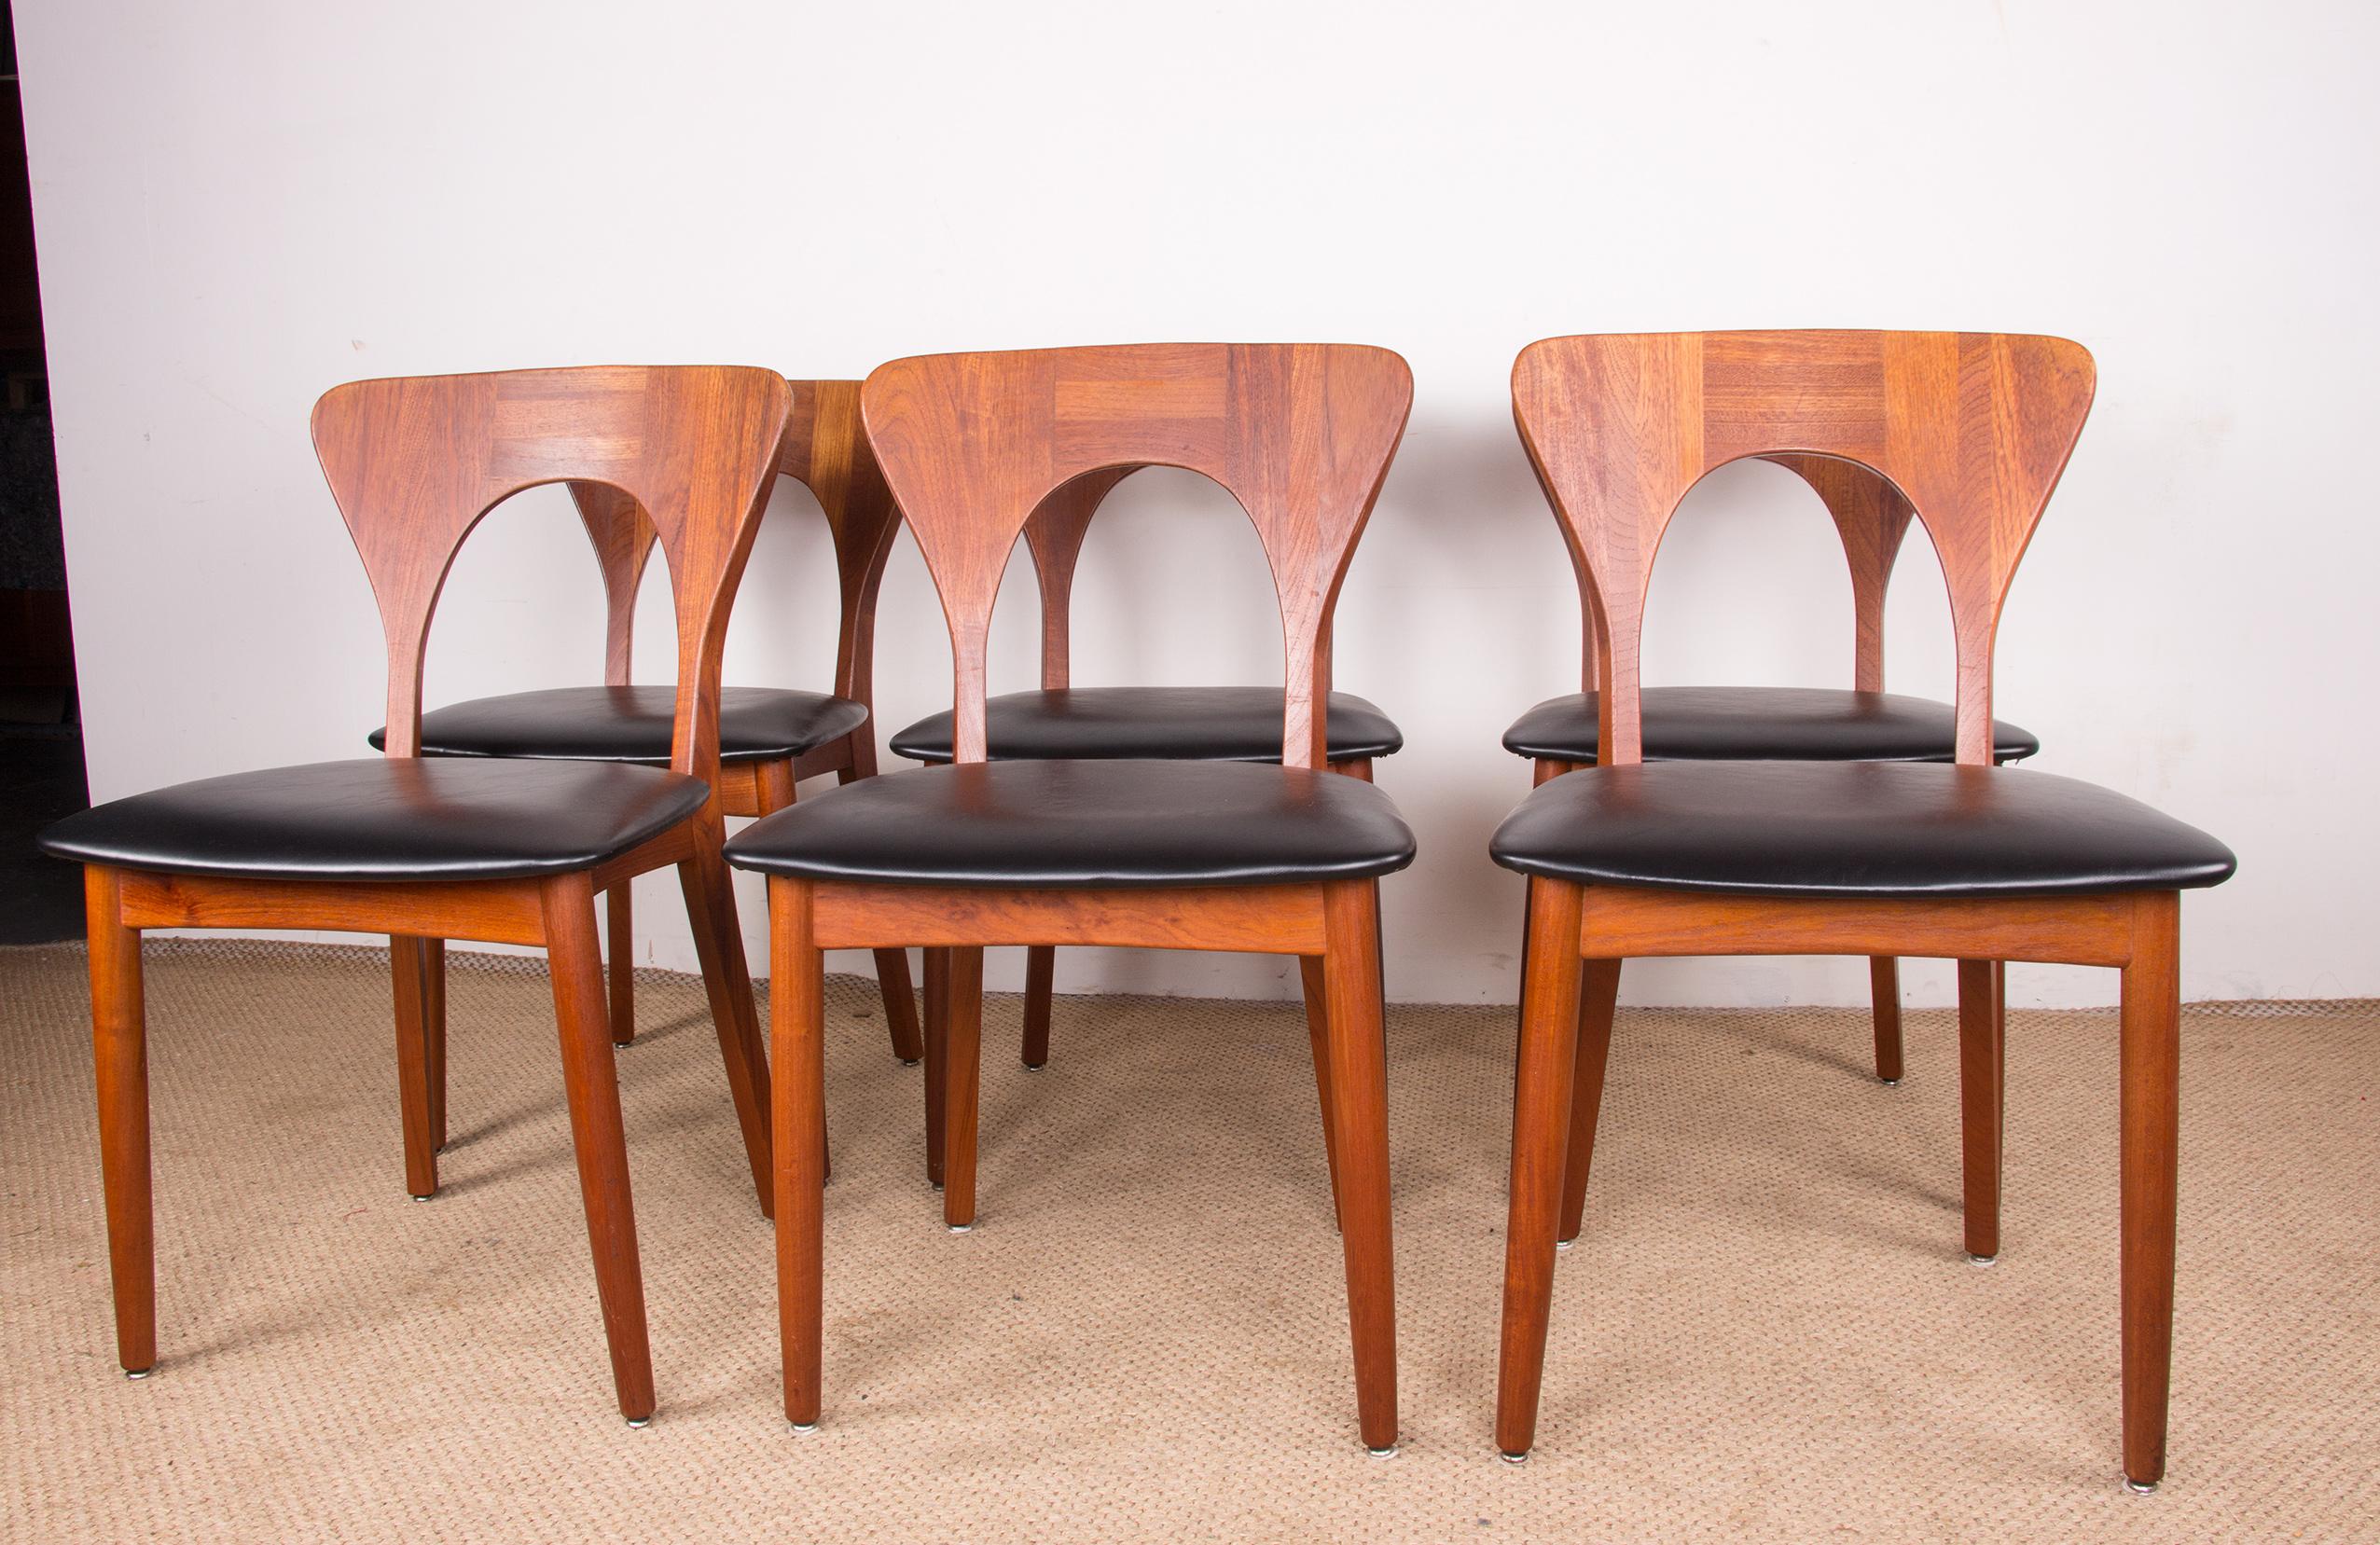 Series of 6 Danish chairs in Teak and skai, Peter model by Niels Koefoed 1960. 12